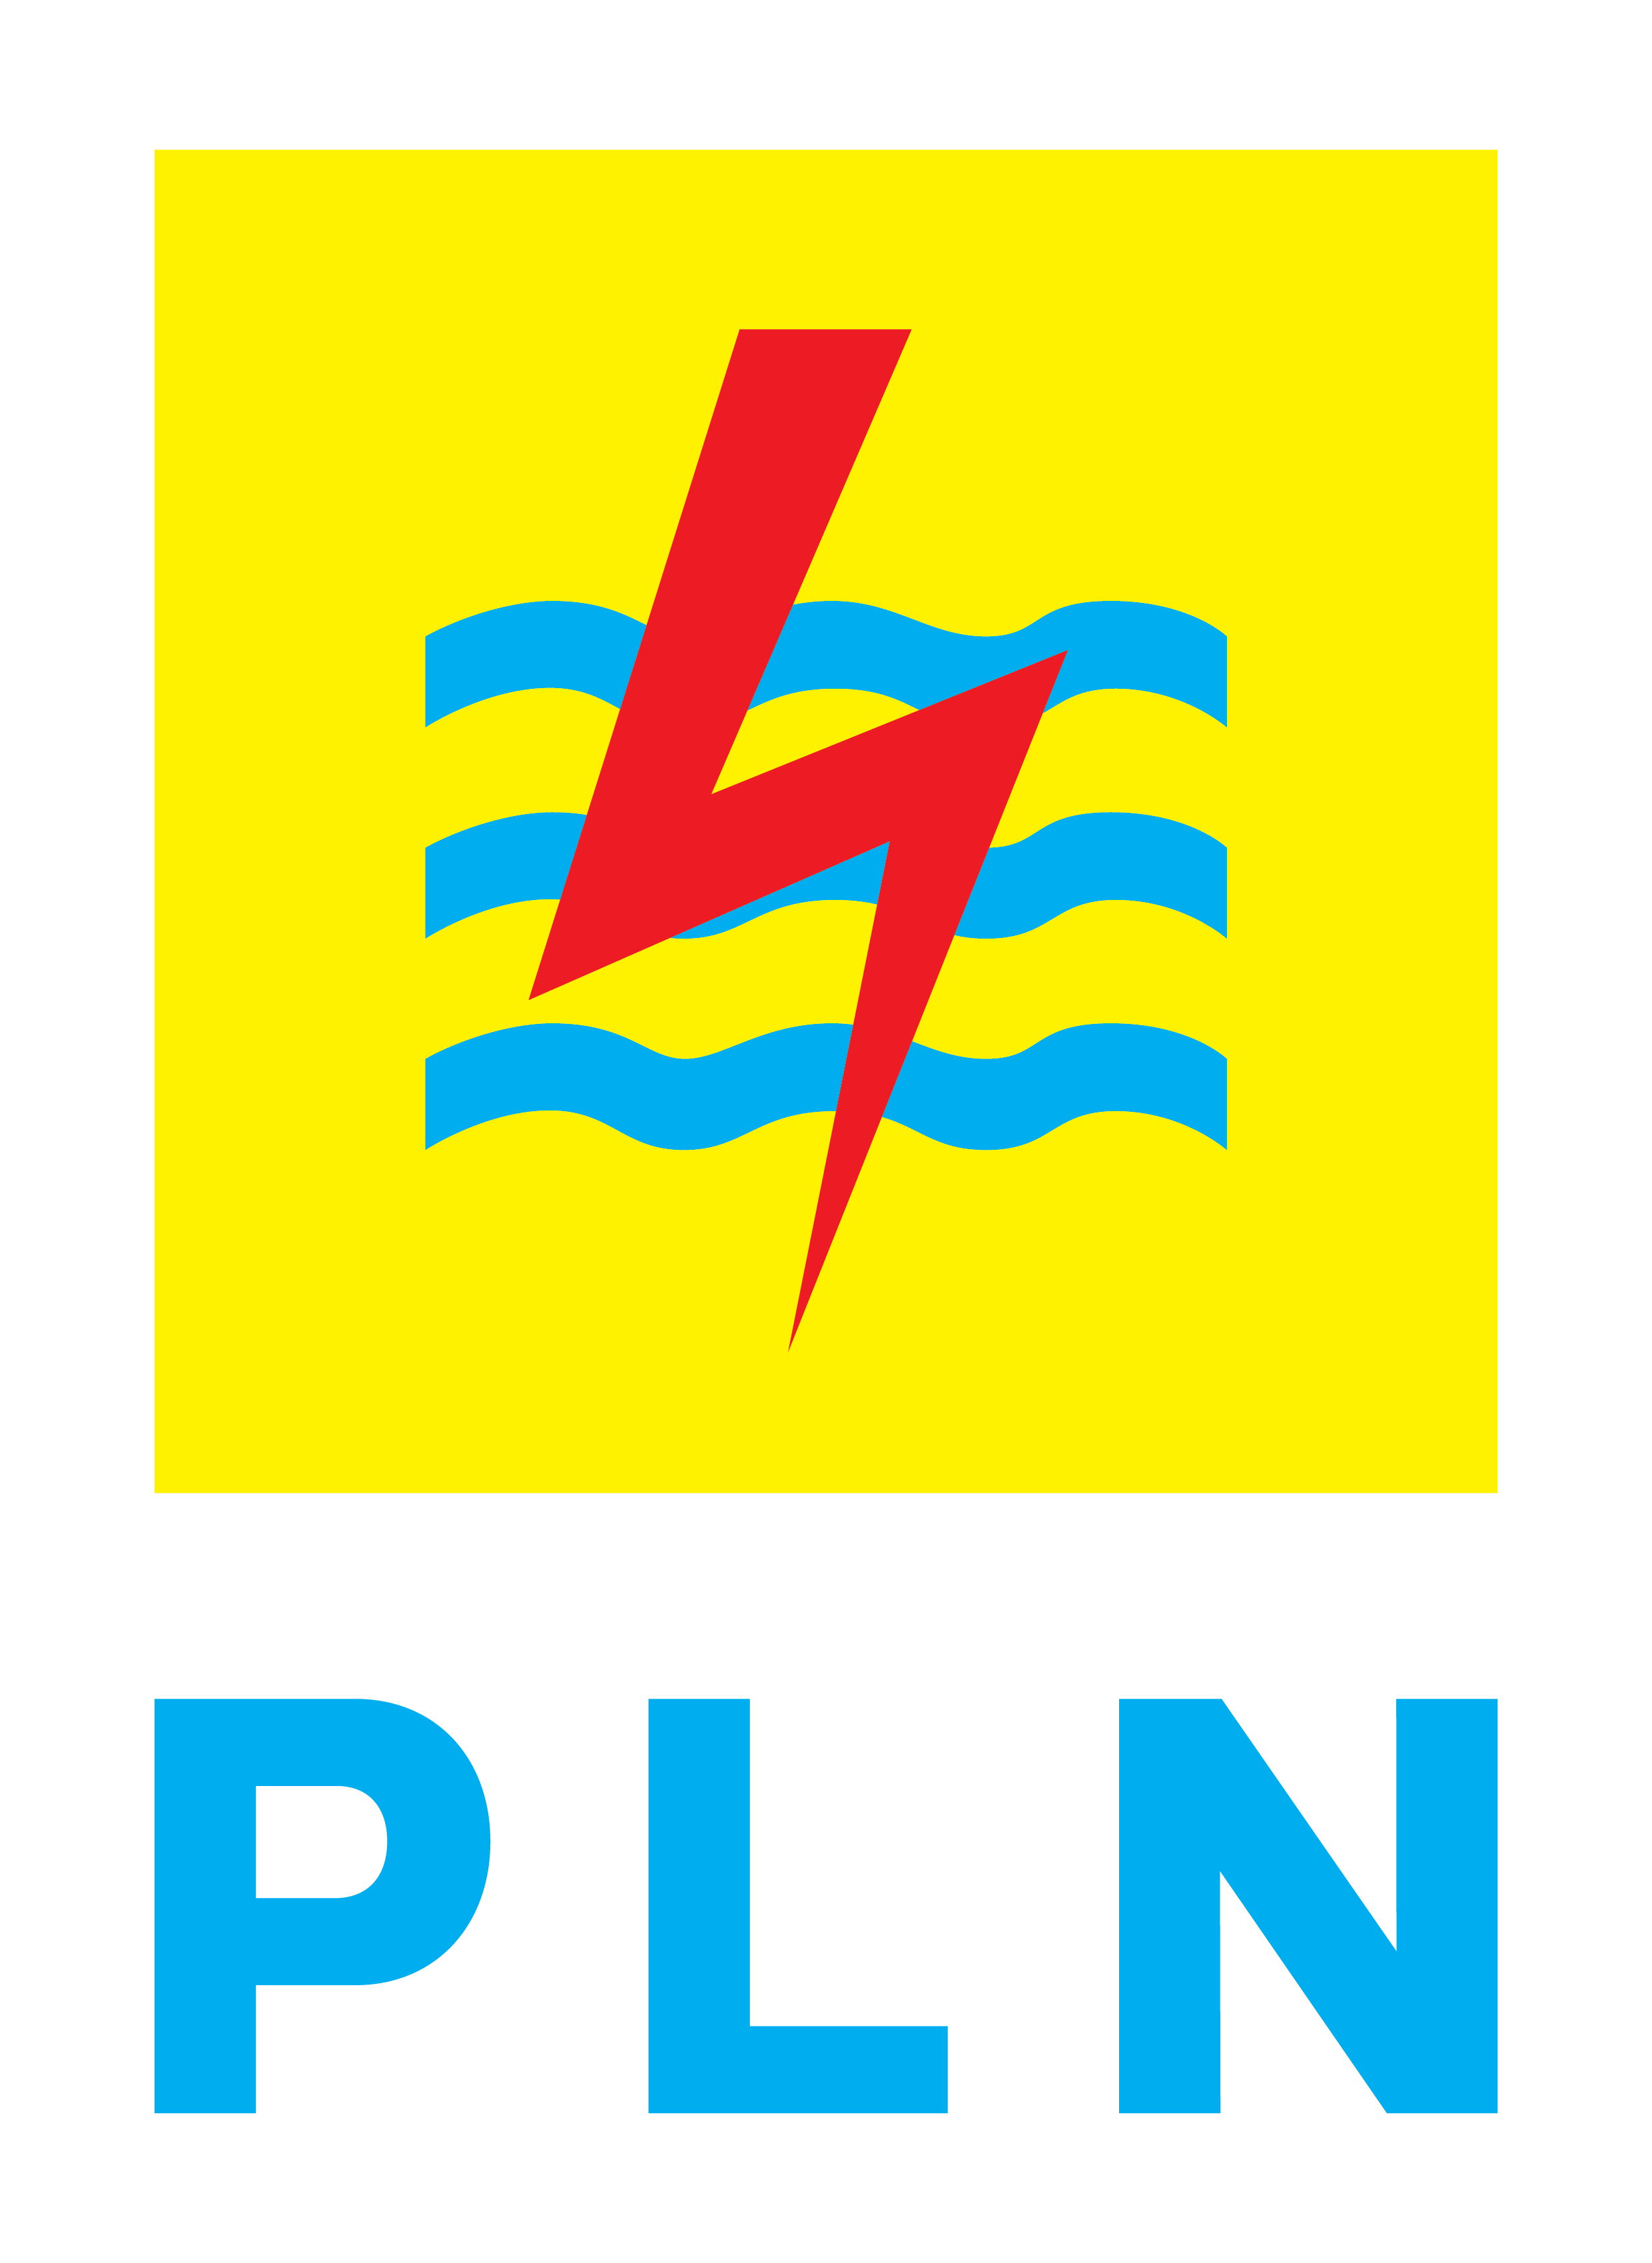 PLN.png